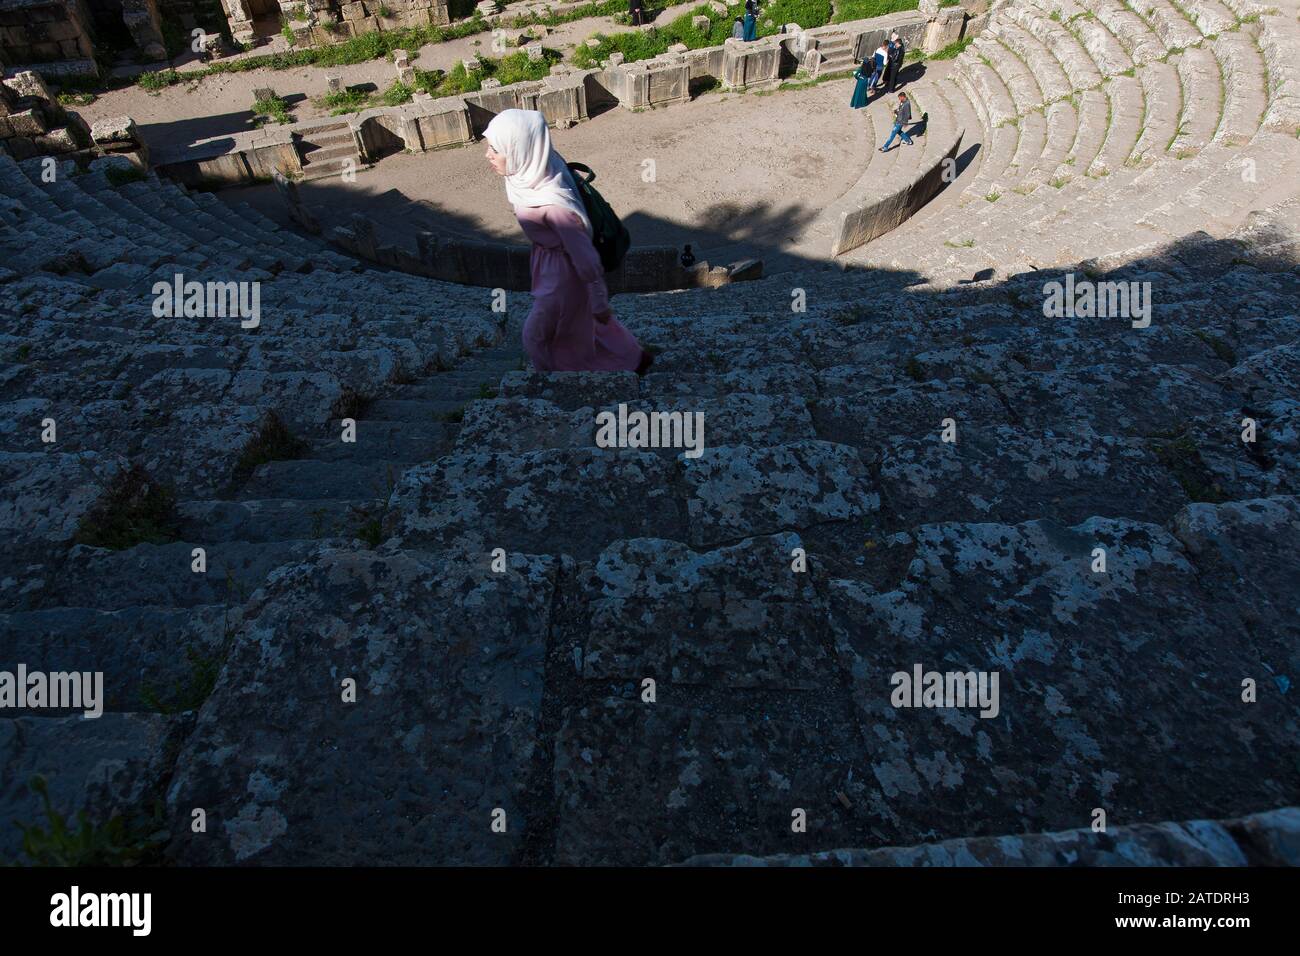 L'amphithéâtre des ruines romaines anciennes de Djemilla, site classé au patrimoine mondial de l'UNESCO dans le nord de l'Algérie. Près de Setif.. Banque D'Images